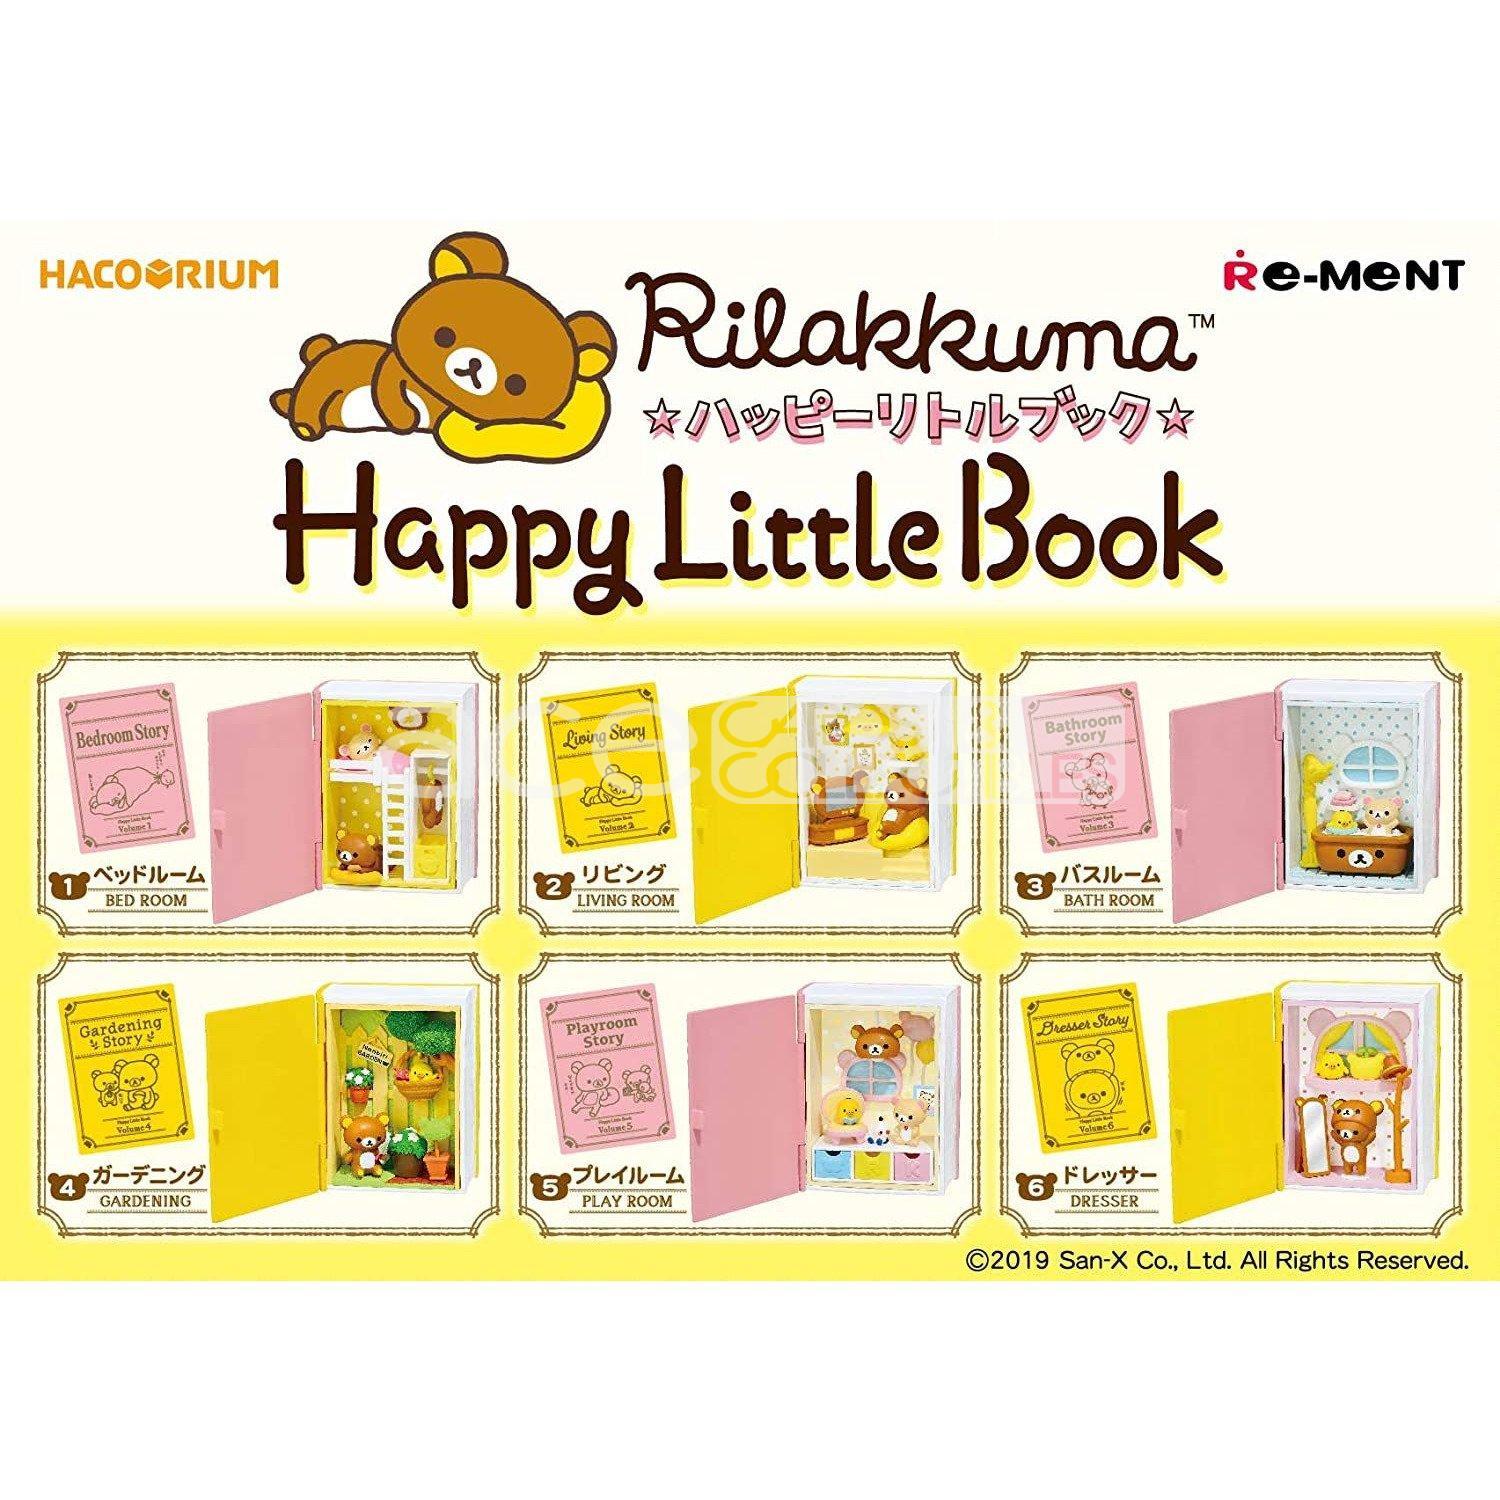 Re-Ment Hacorium Rilakkuma -Happy Little Book-Single (Random)-Re-Ment-Ace Cards & Collectibles